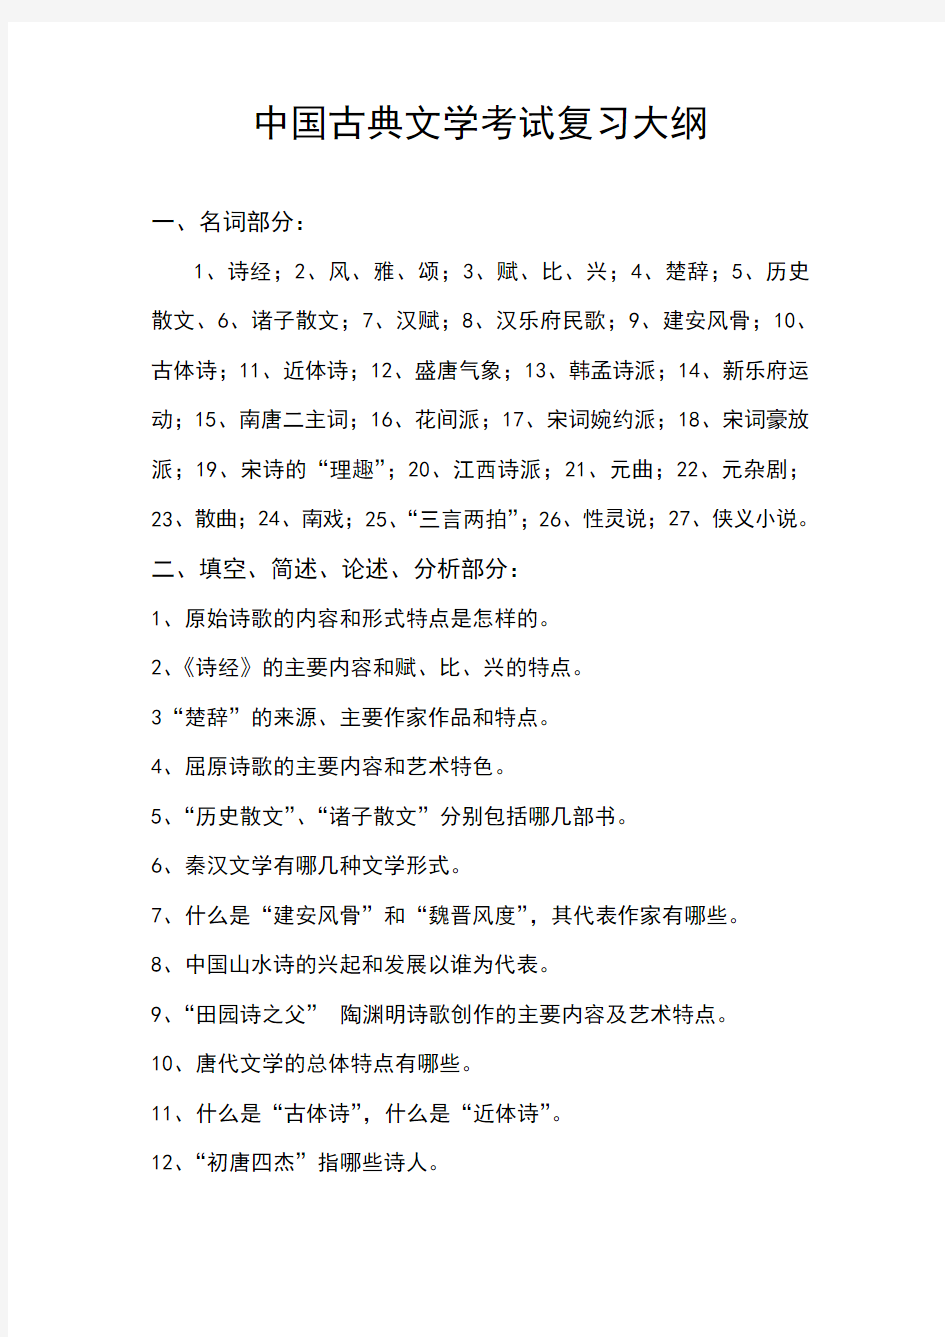 中国古典文学考试复习大纲 (2)